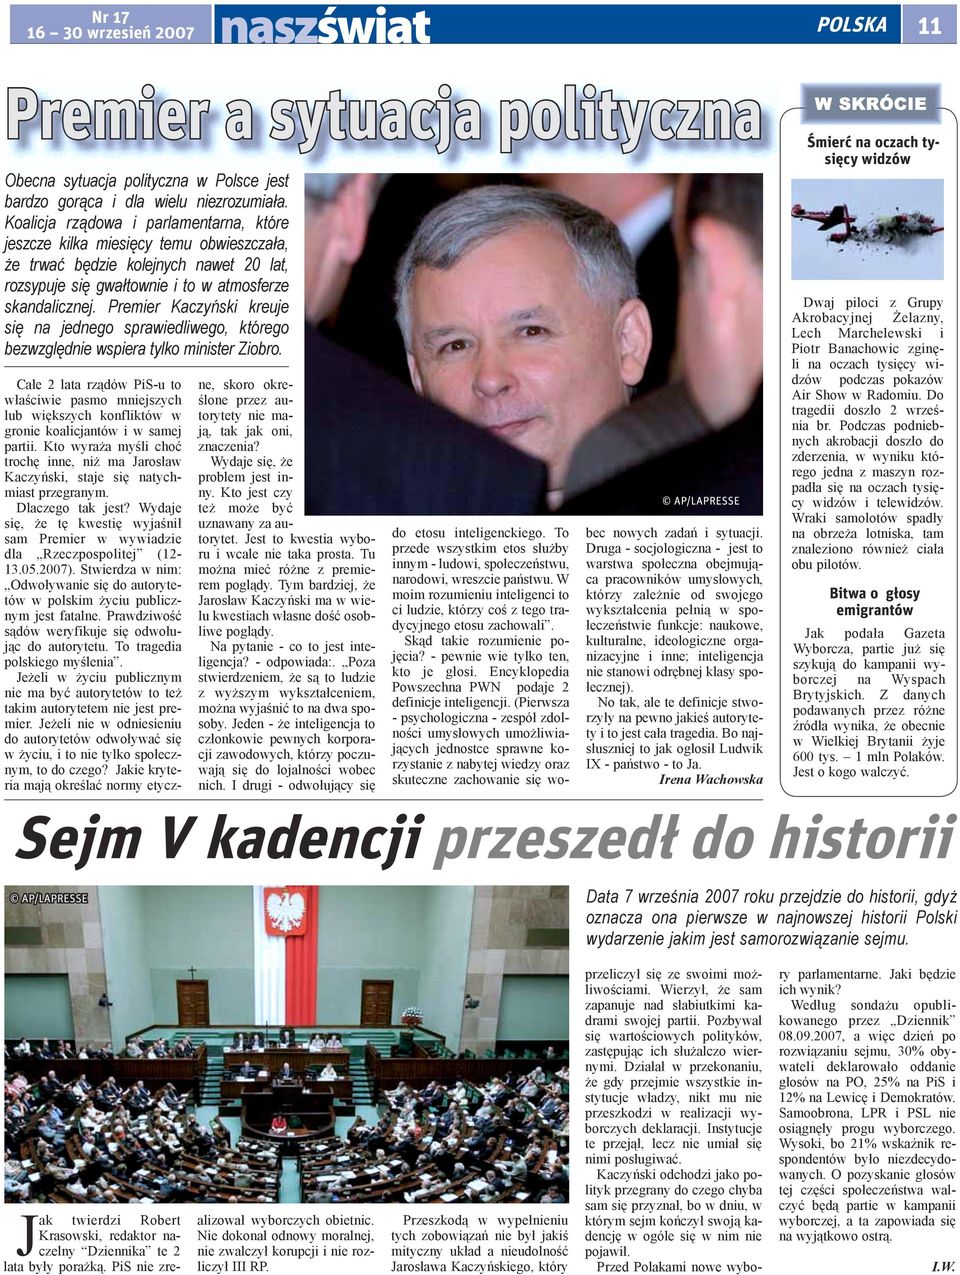 Premier Kaczyński kreuje się na jednego sprawiedliwego, którego bezwzględnie wspiera tylko minister Ziobro.